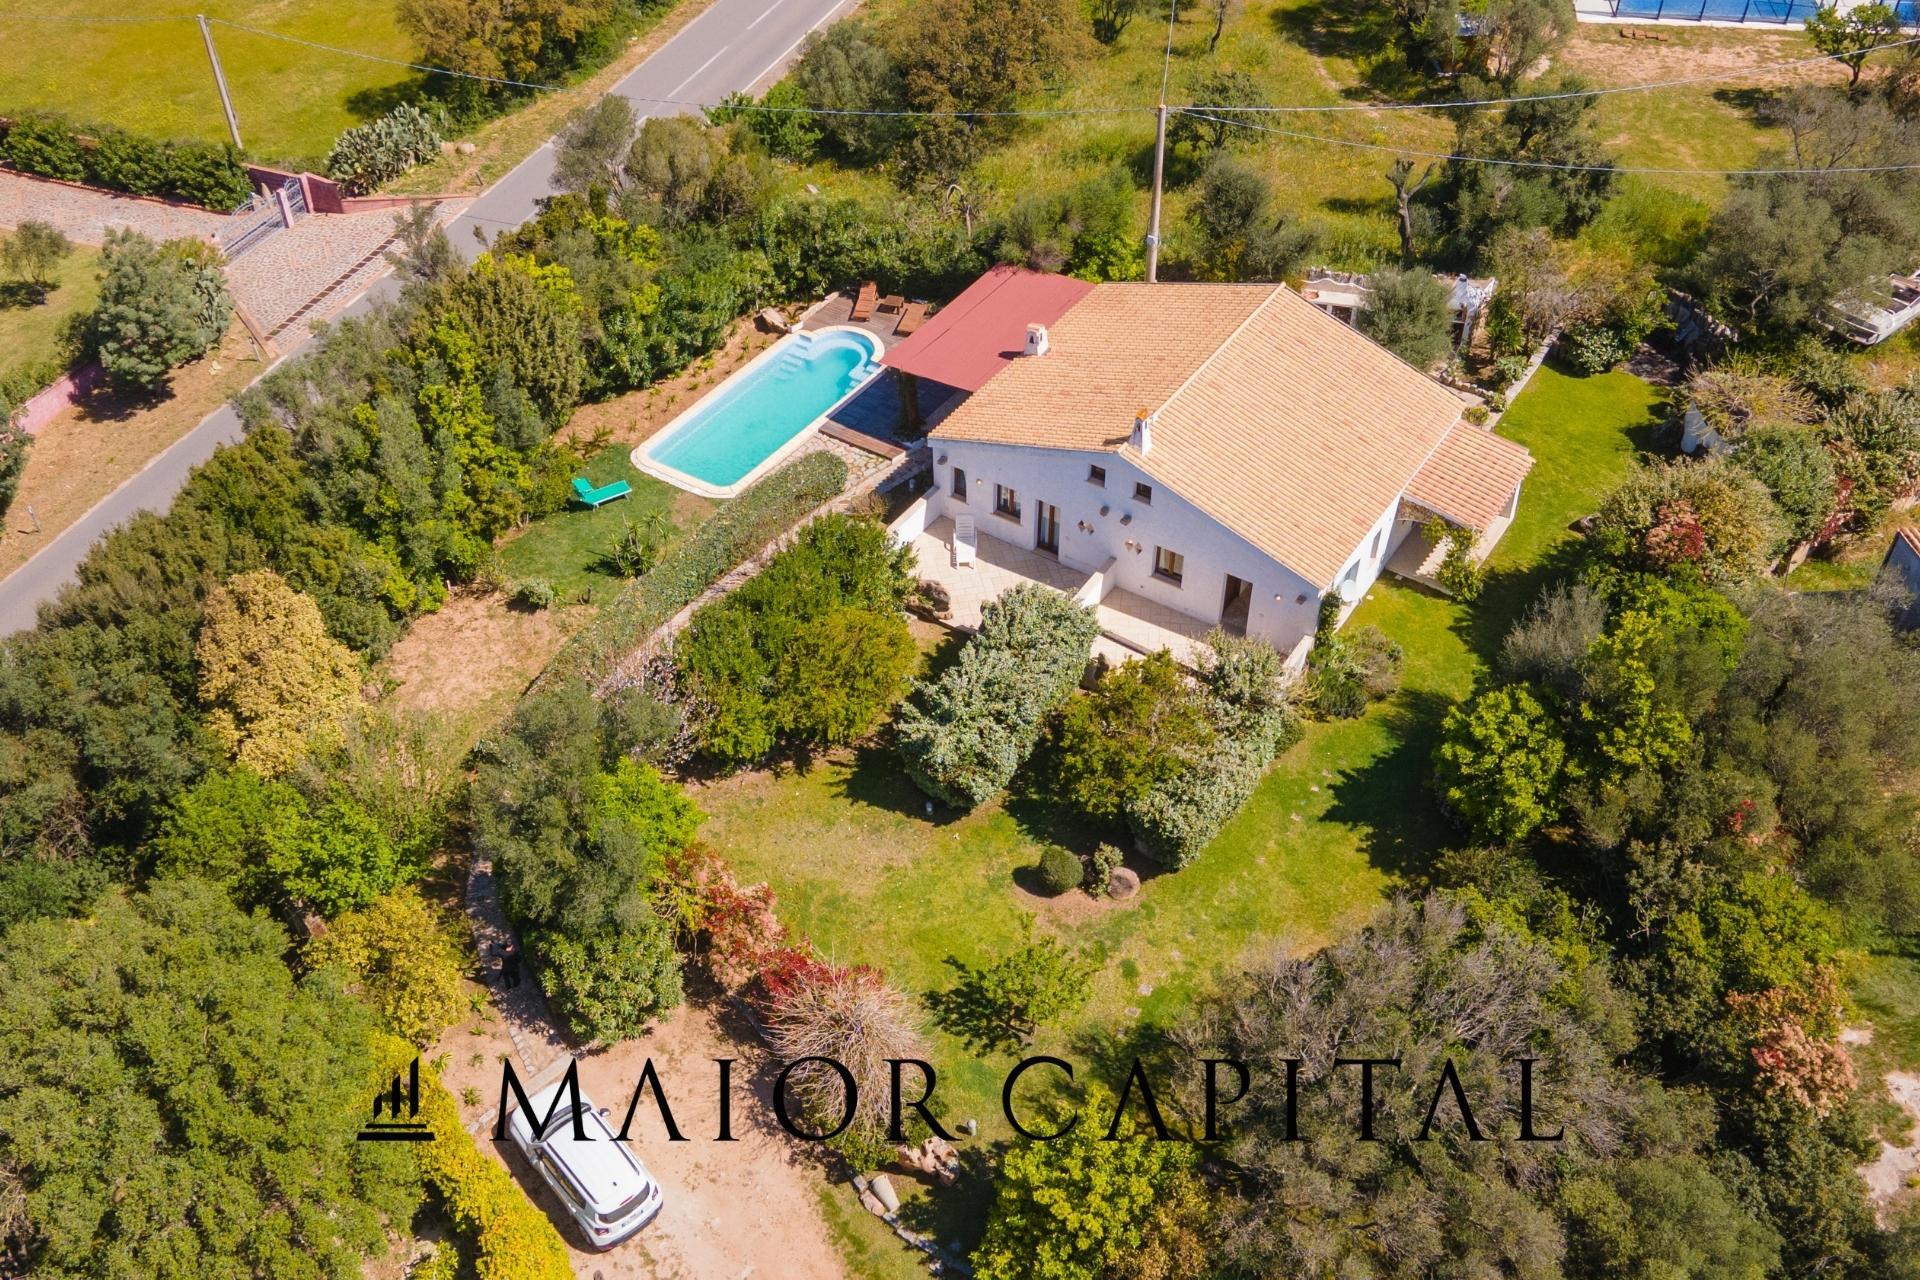 A vendre villa in zone tranquille Arzachena Sardegna